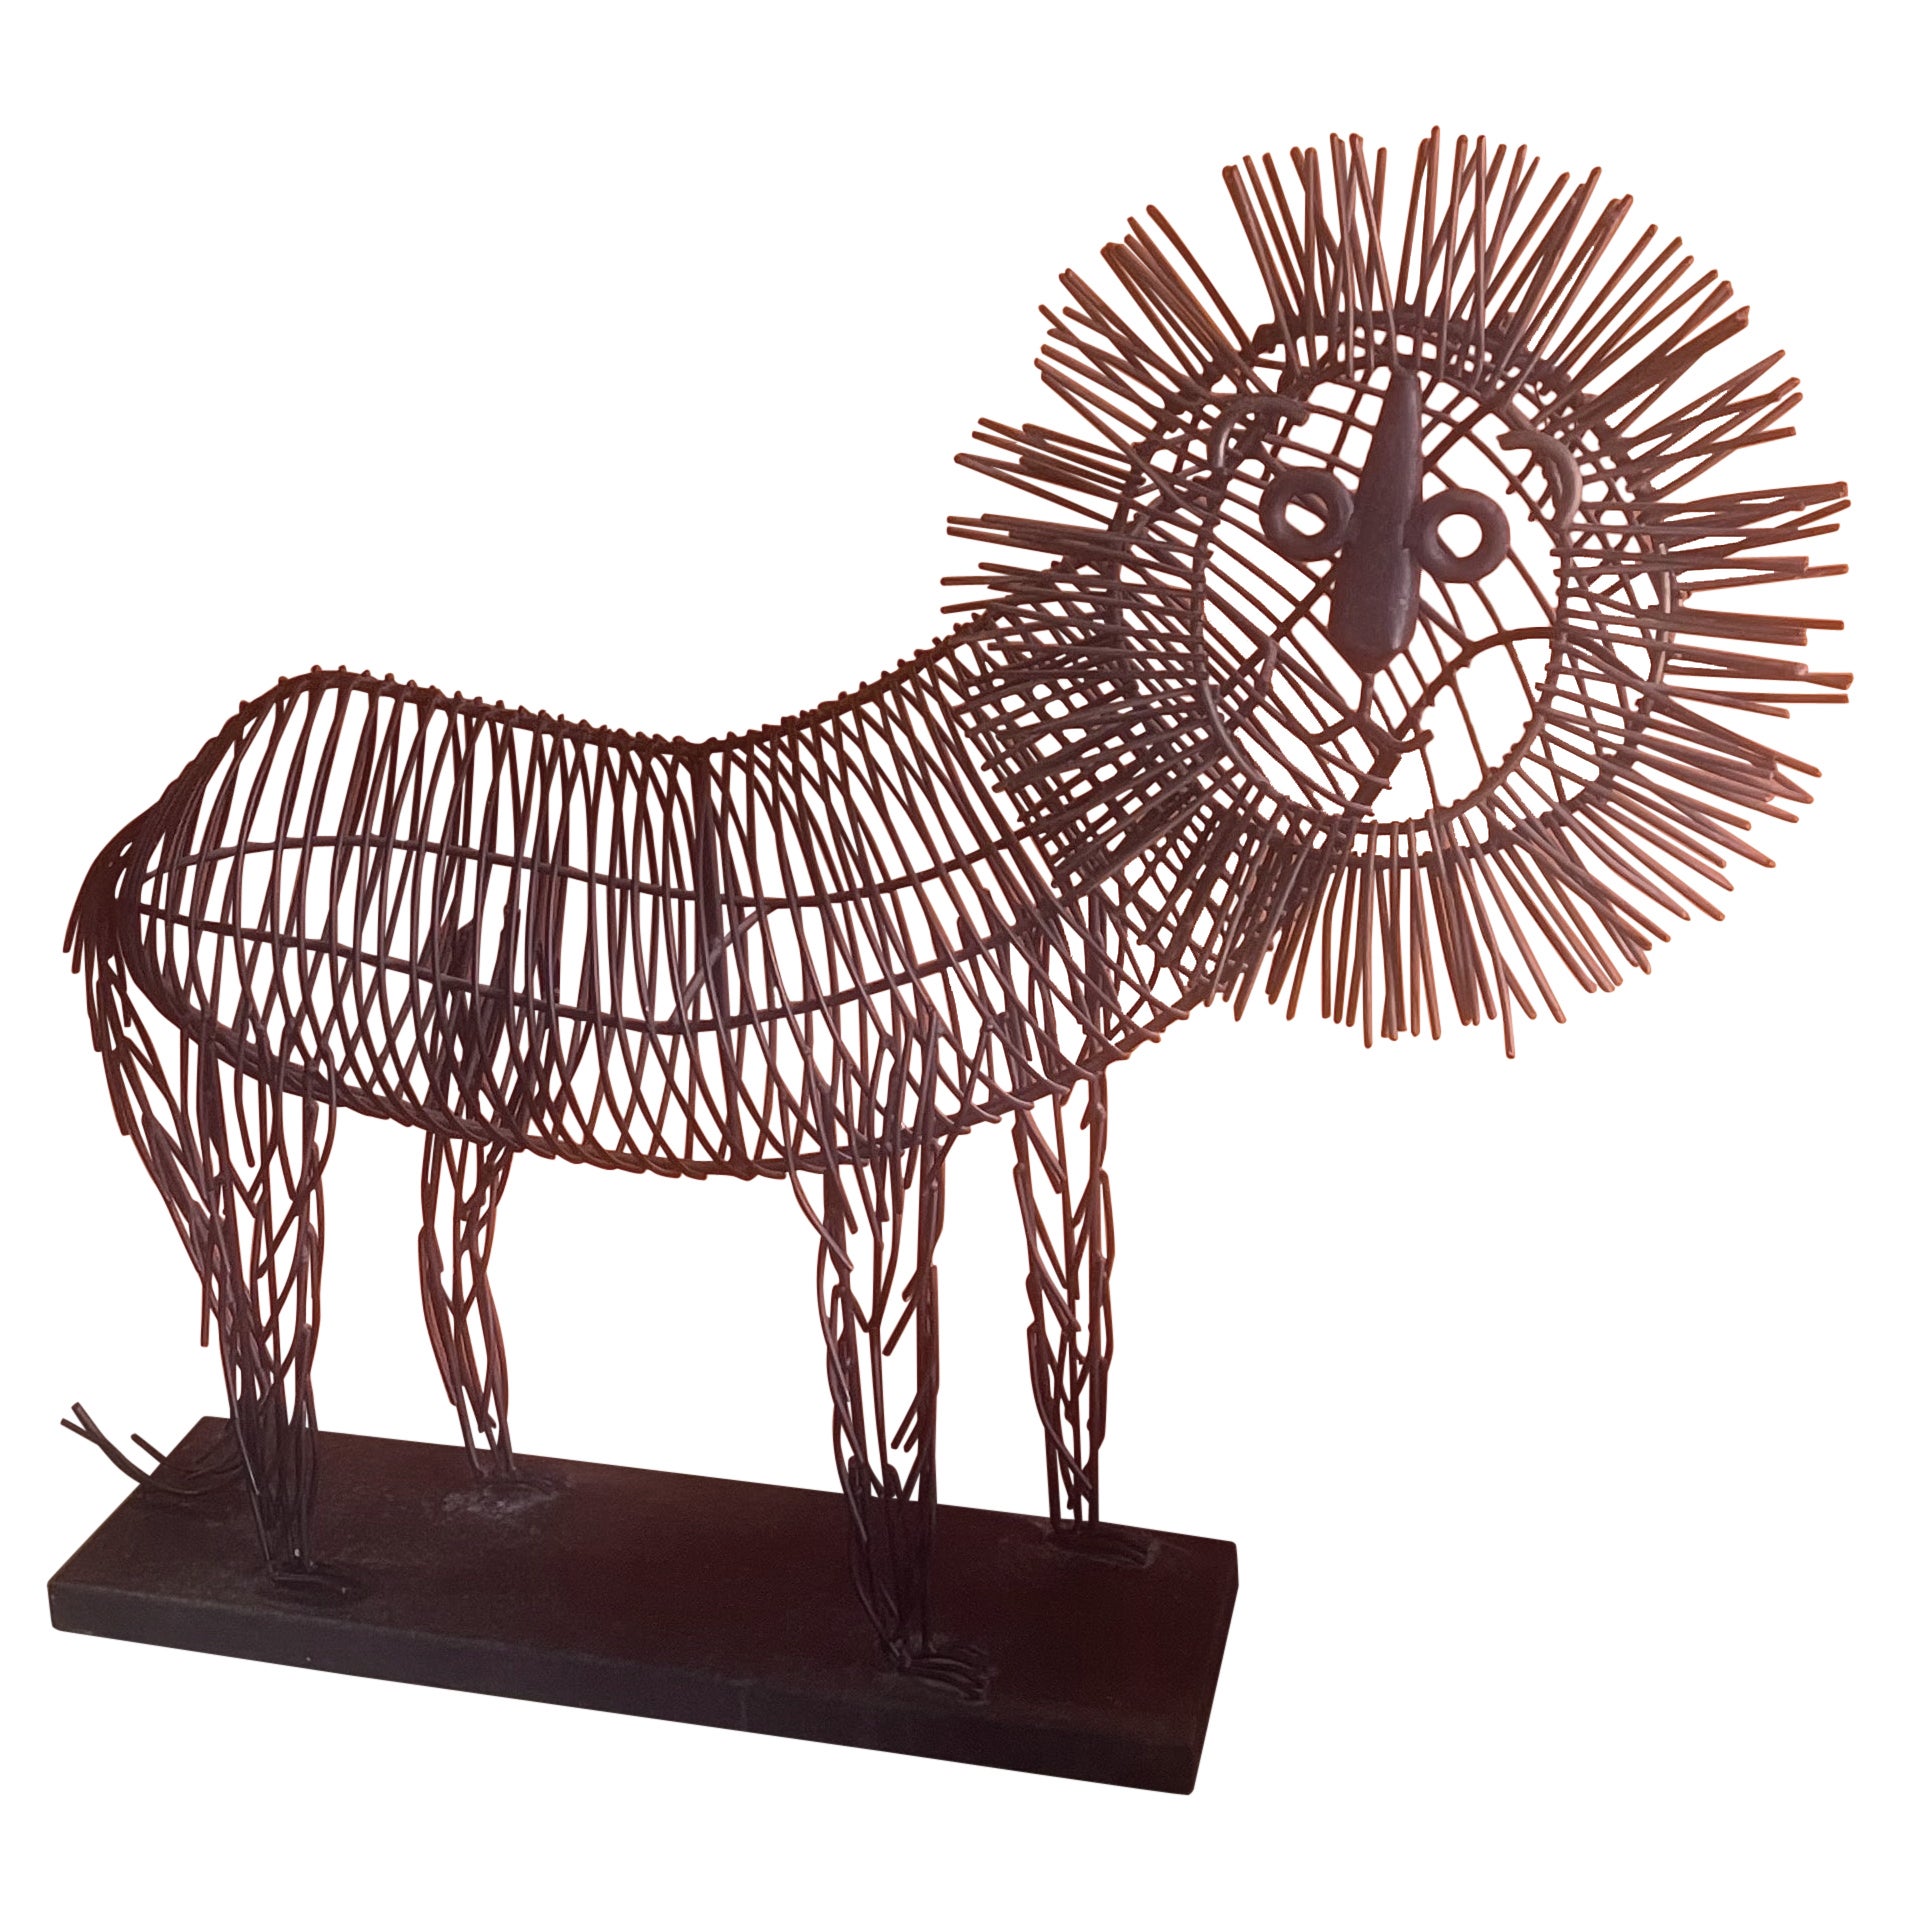 Grande sculpture fantaisiste de lion en métal métallique en forme de fil dans le style de C. Jere